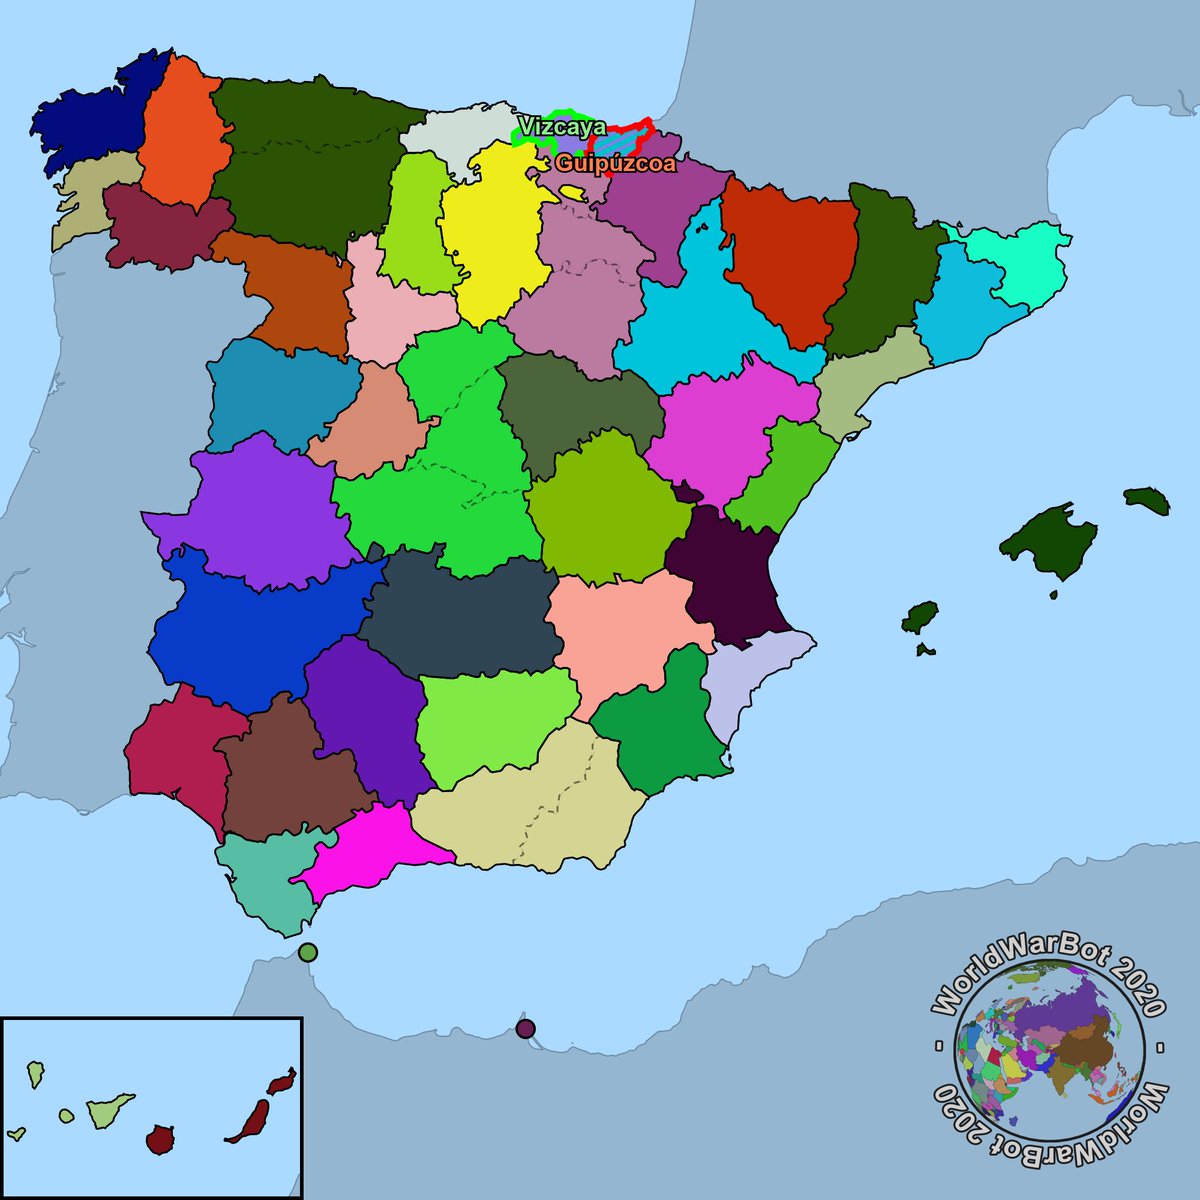 Primera semana de marzo, año 2020, Vizcaya ha conquistado la provincia de Guipúzcoa.
Guipúzcoa ha sido derrotada.
45 provincias restantes.